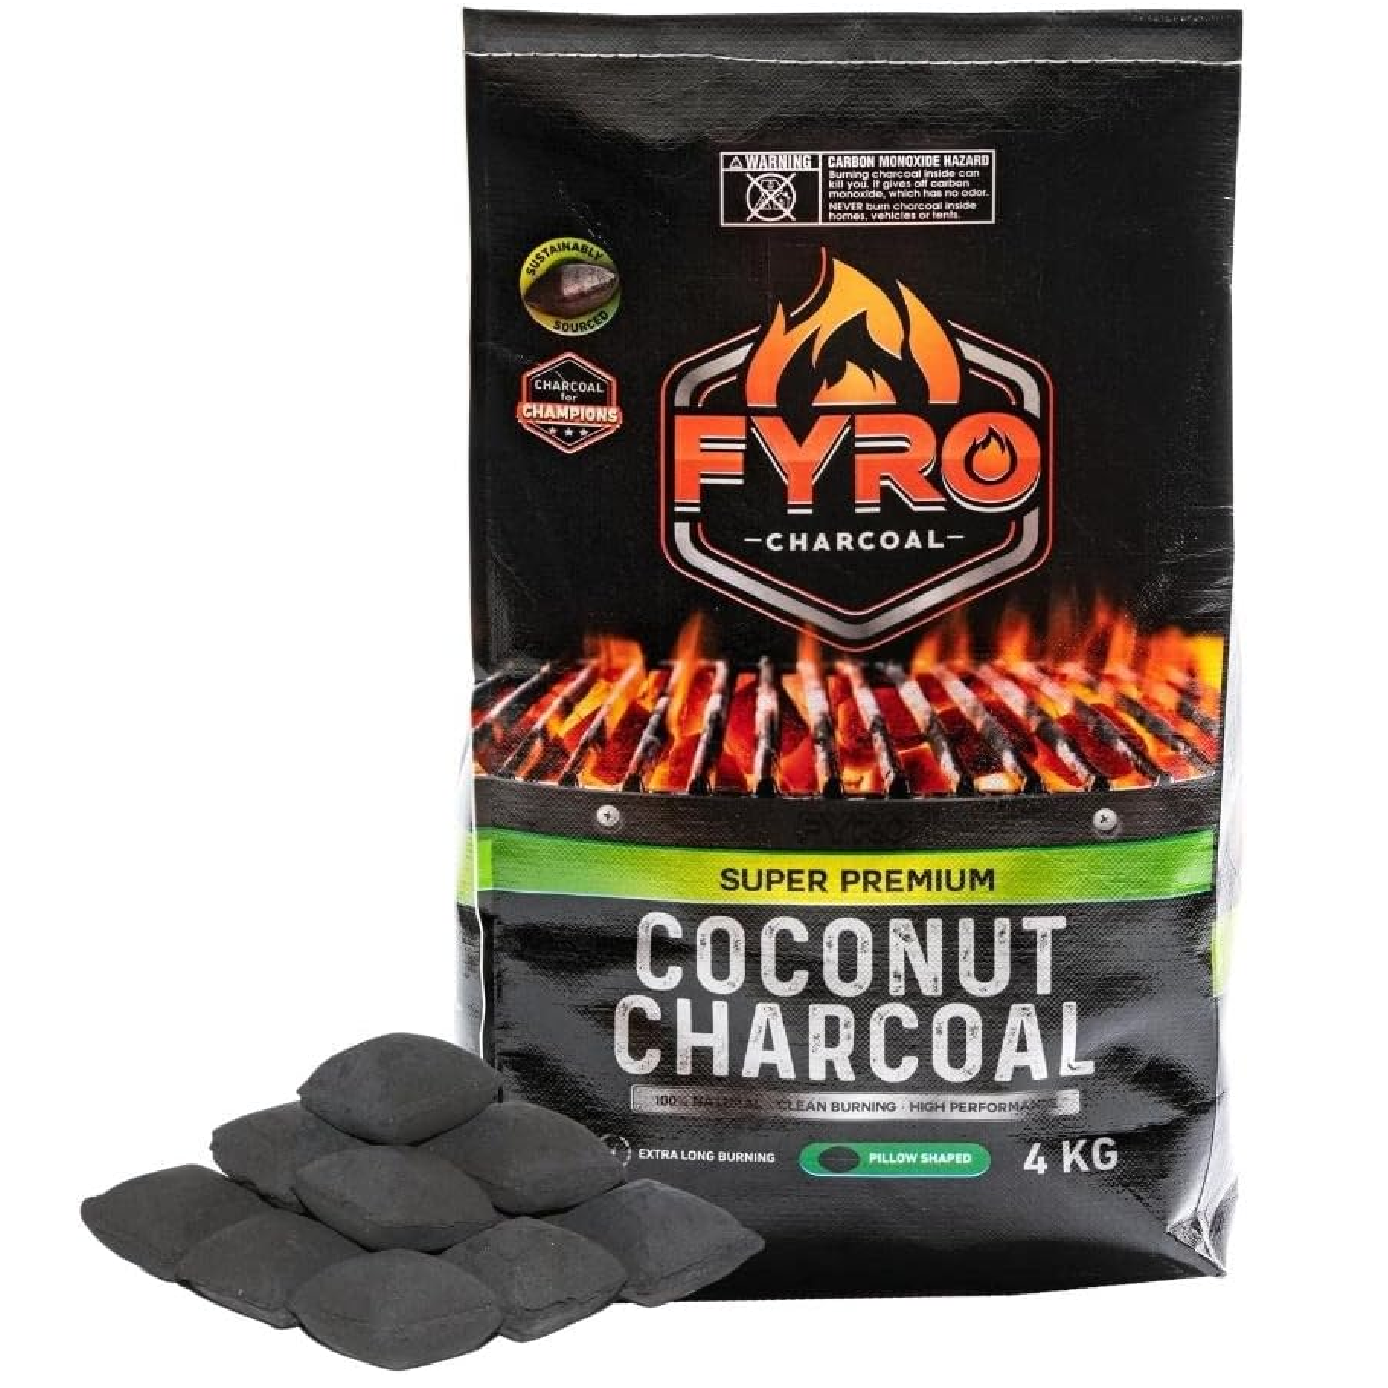 FYRO PREMIUM Coconut Charcoal BRIQUETTES 4KG